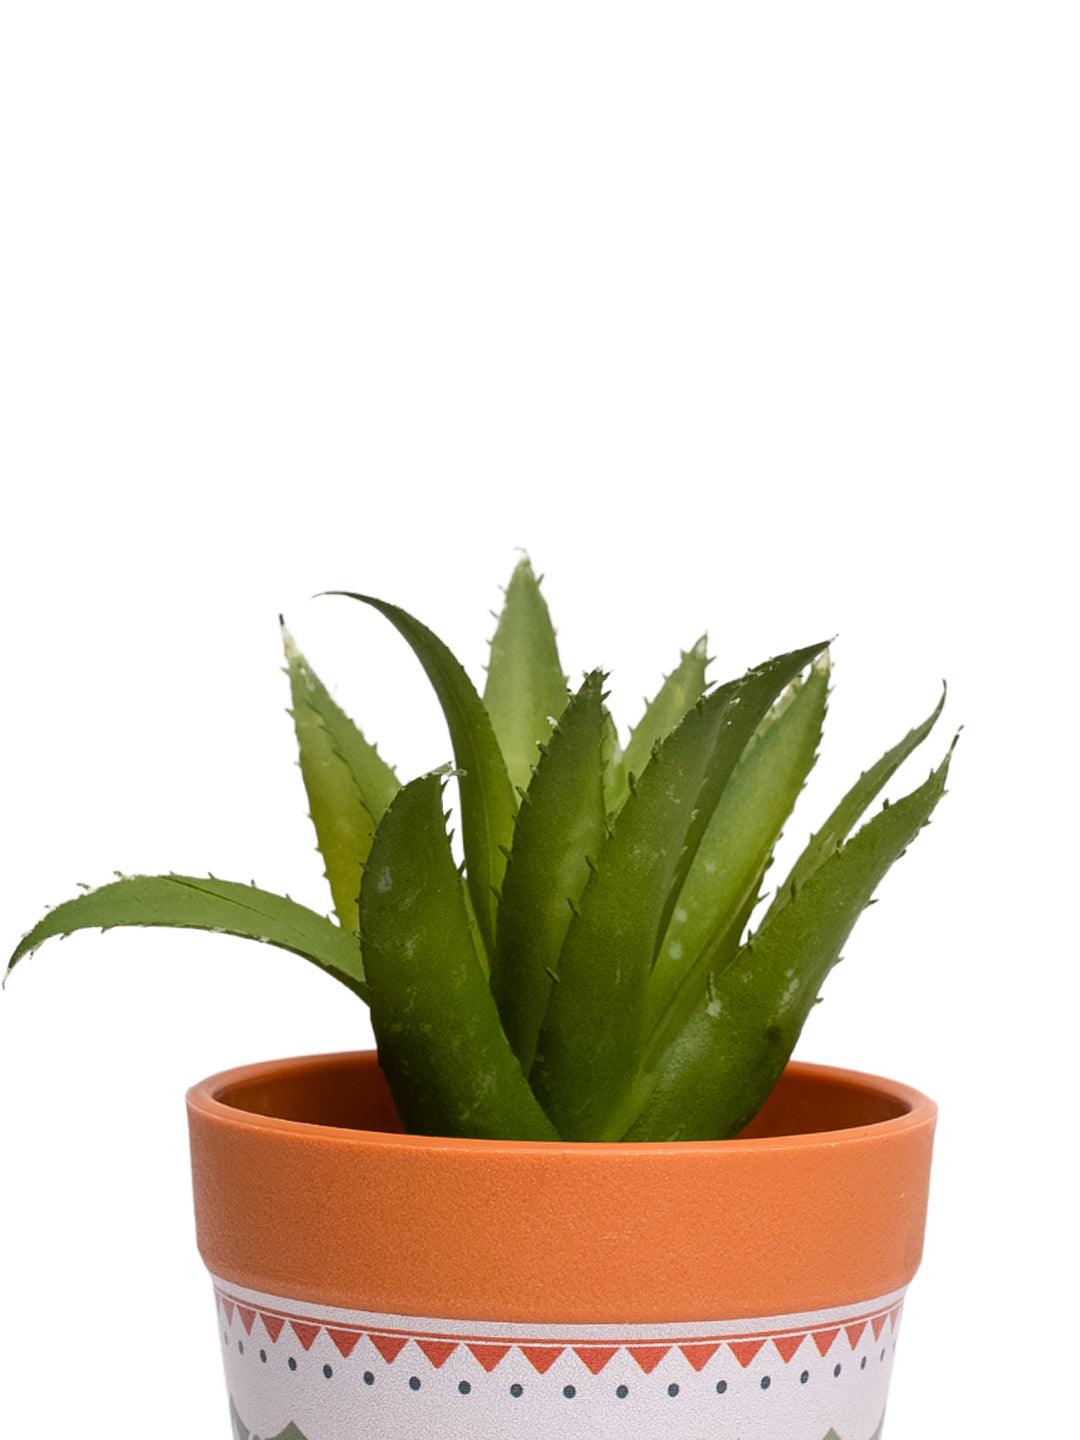 VON CASA Aloevera Artificial Potted Plant - Mandala Style